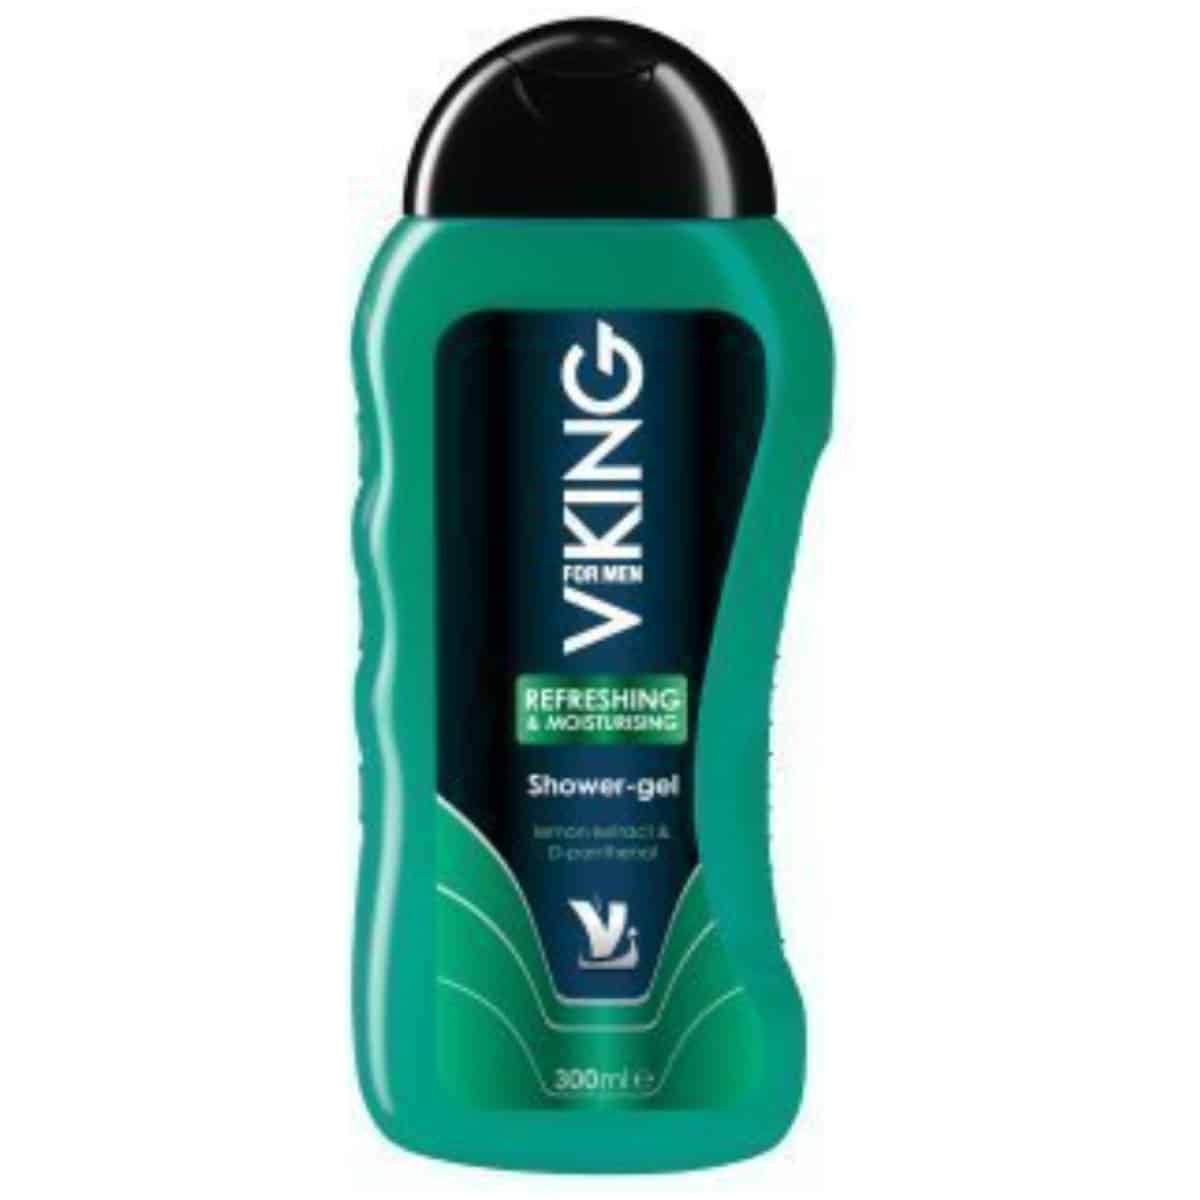 Viking Regenerating & Moisturizing Shower Gel for Men